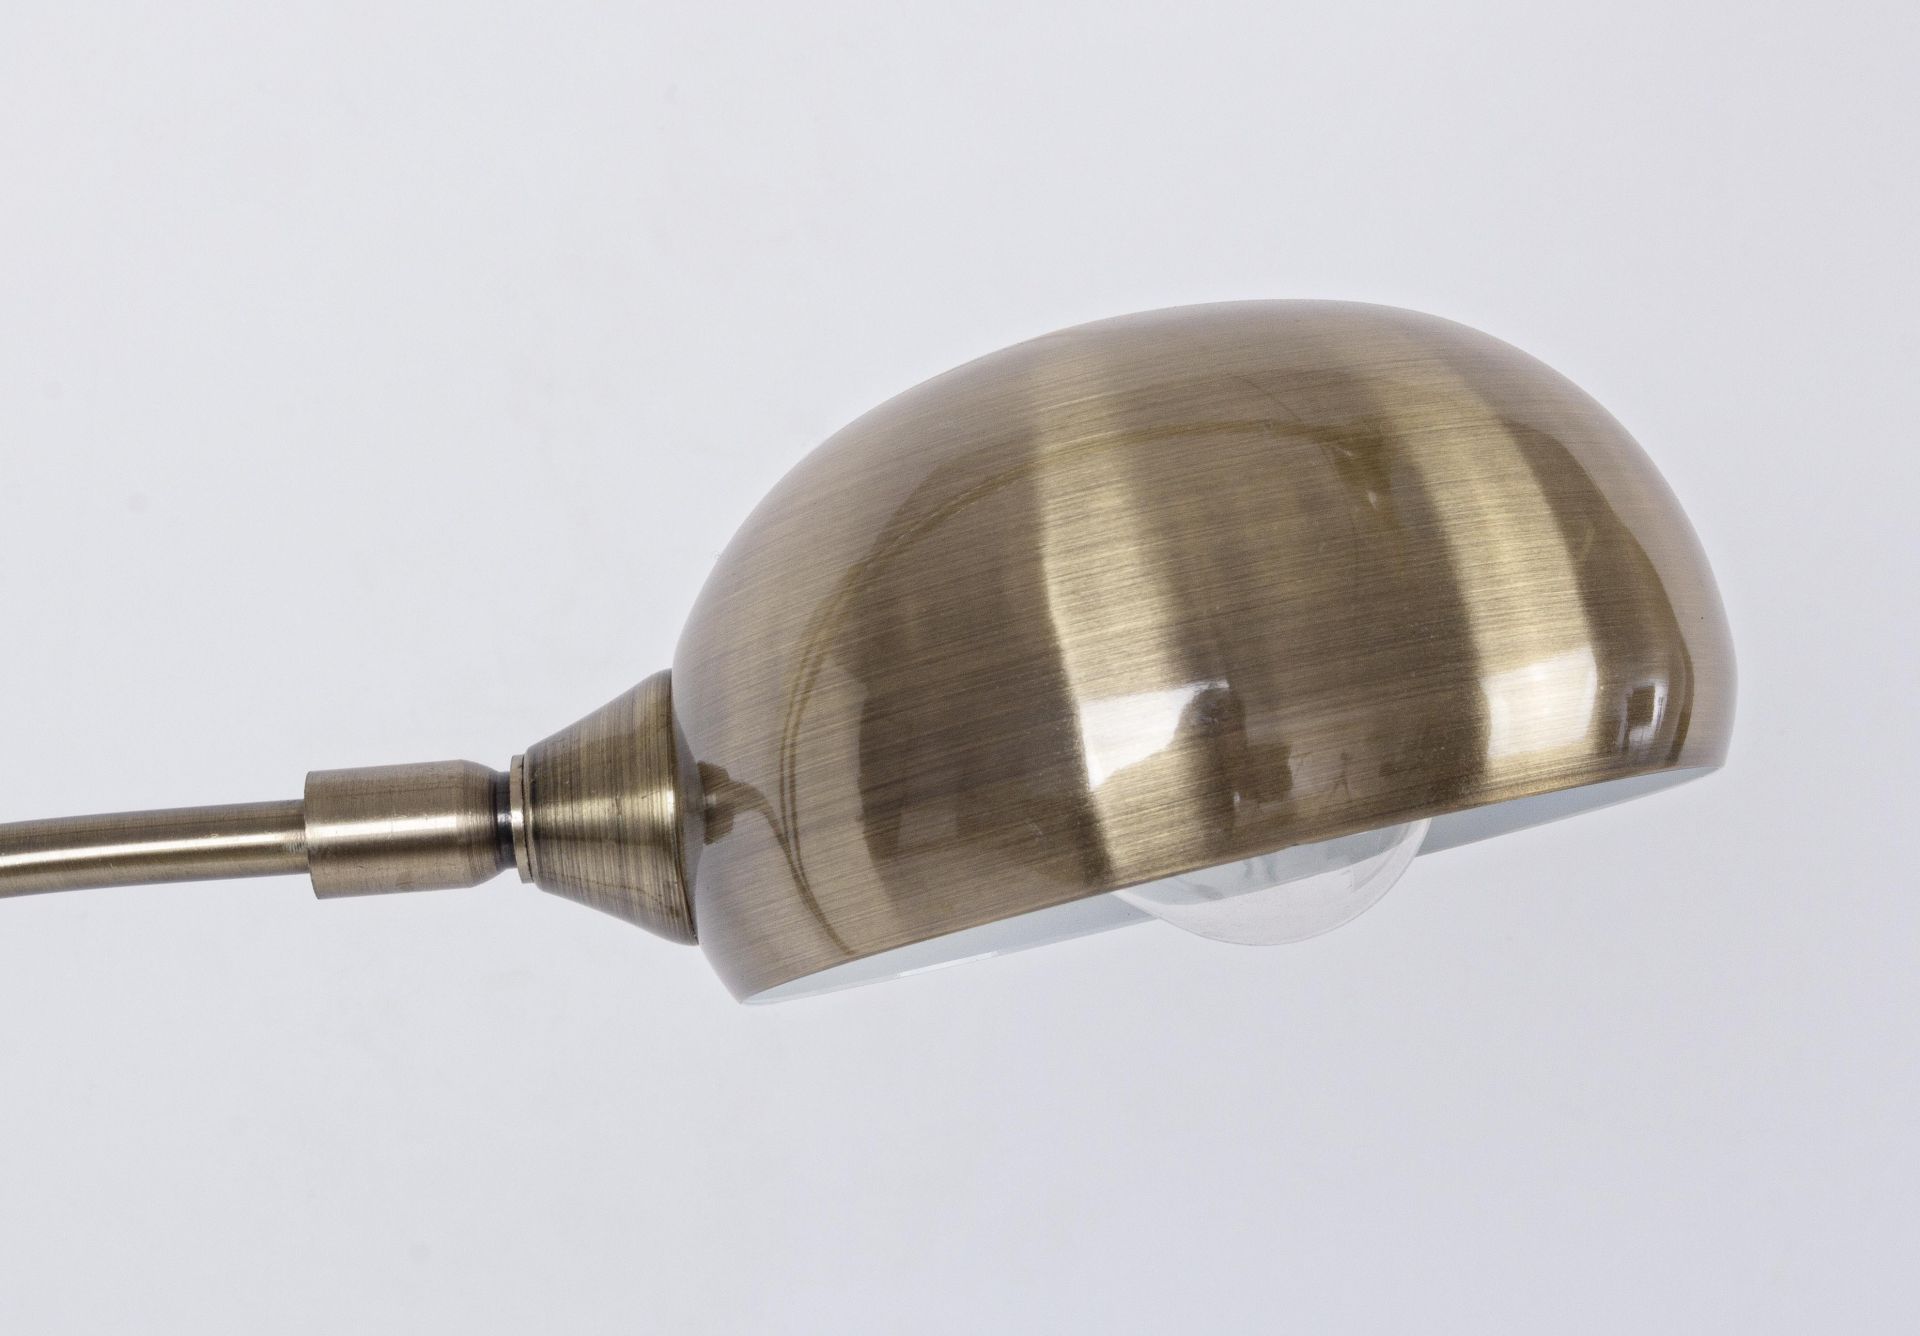 Die Stehleuchte Atmosphere überzeugt mit ihrem klassischen Design. Gefertigt wurde sie aus Metall, welches einen goldenen Farbton besitzt. Der Lampenschirm ist auch aus Metall. Die Lampe besitzt eine Höhe von 180 cm.